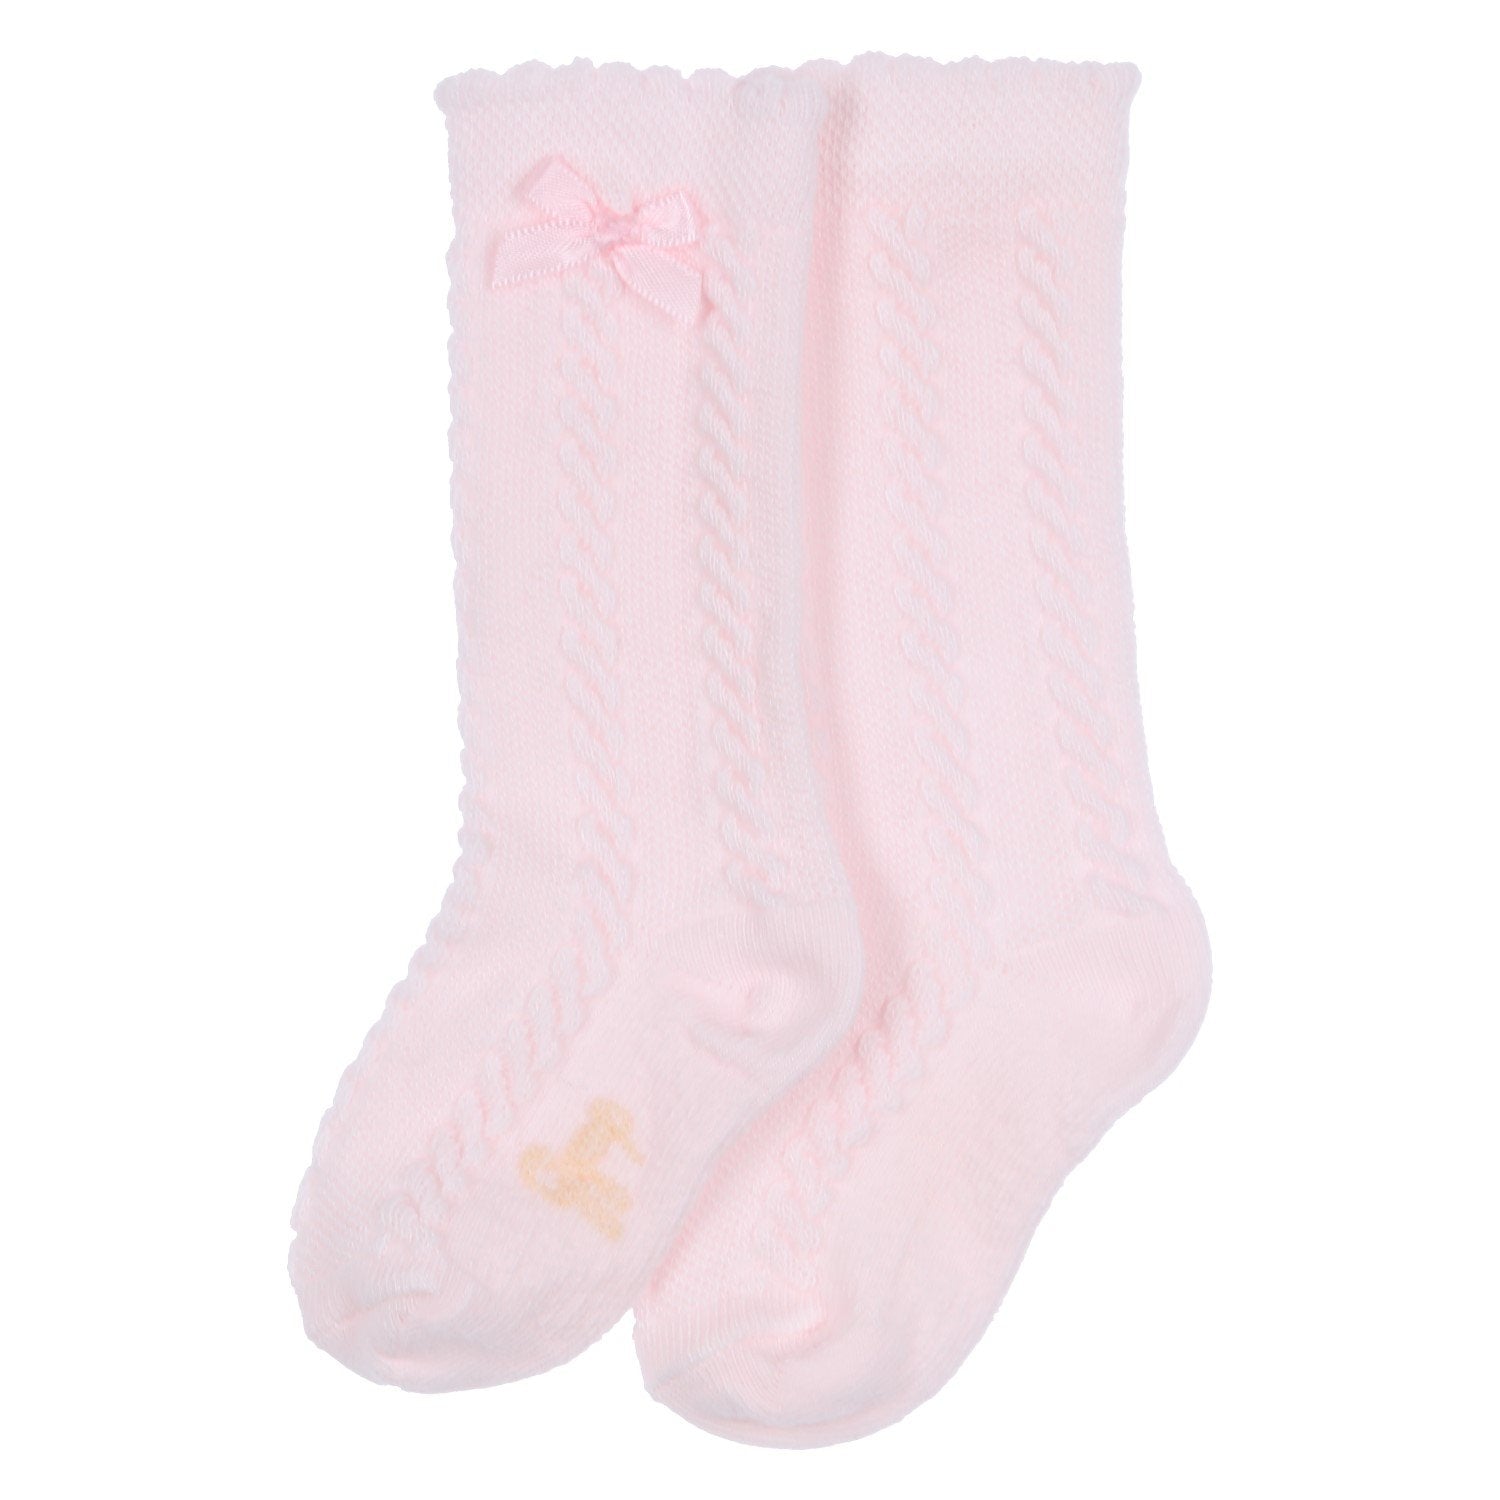 Baby meisjes SOKKEN - girls knee socks - Pr van GYMP in de kleur VIEUX-ROSE in maat 19, 22.